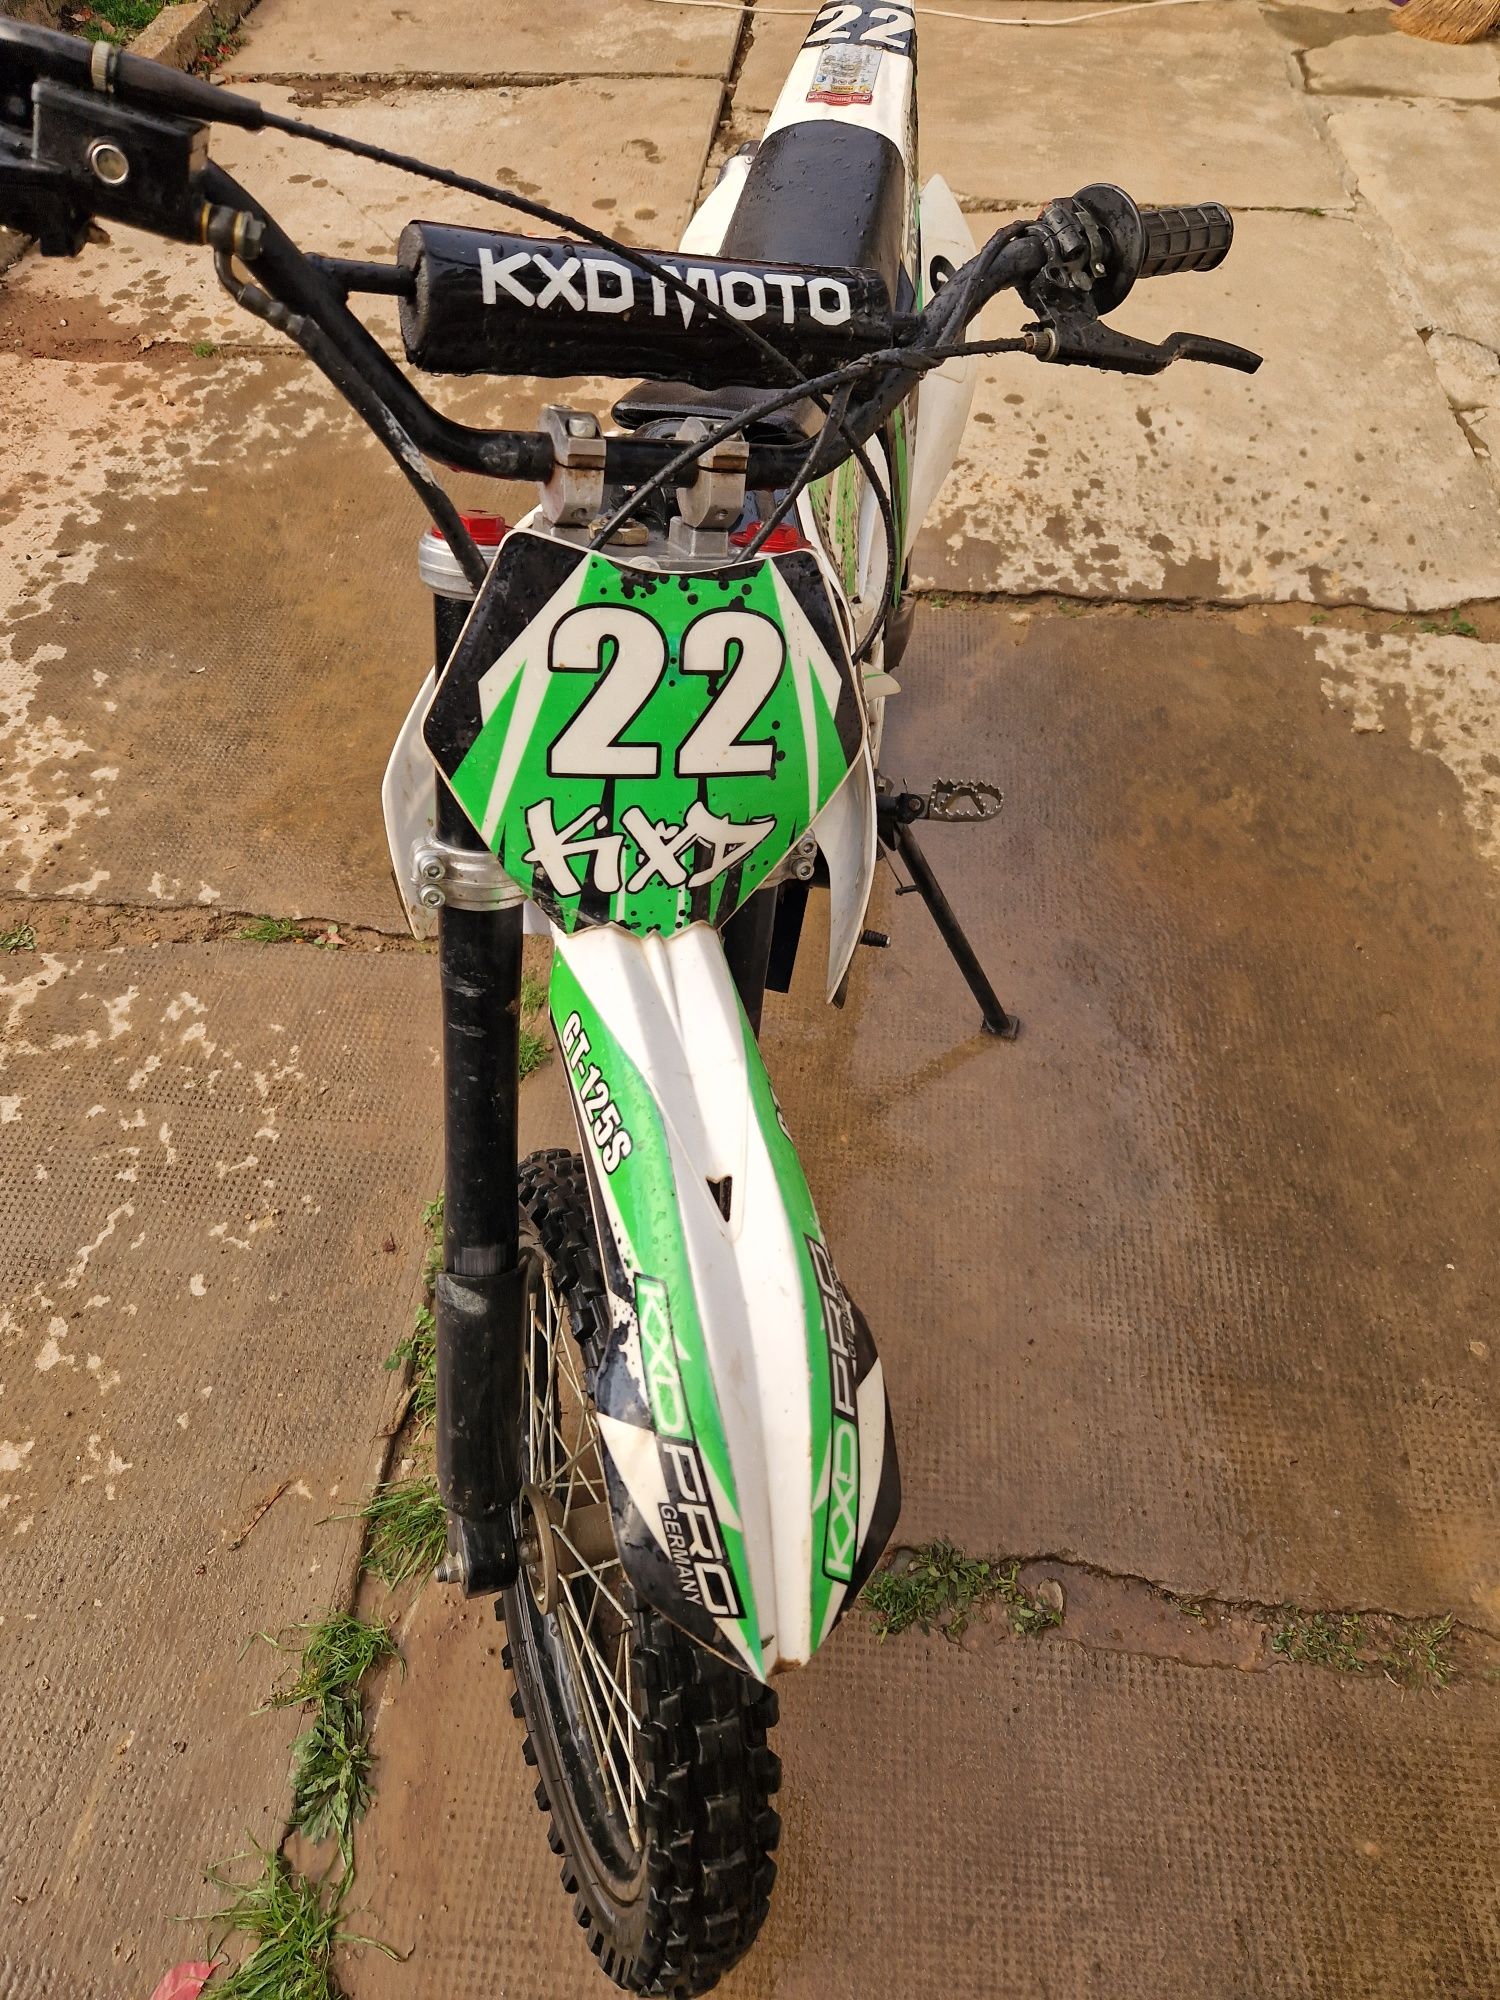 KXD PRO 612 anul de fabricare 2022
• Motocicleta merge foarte bine, p